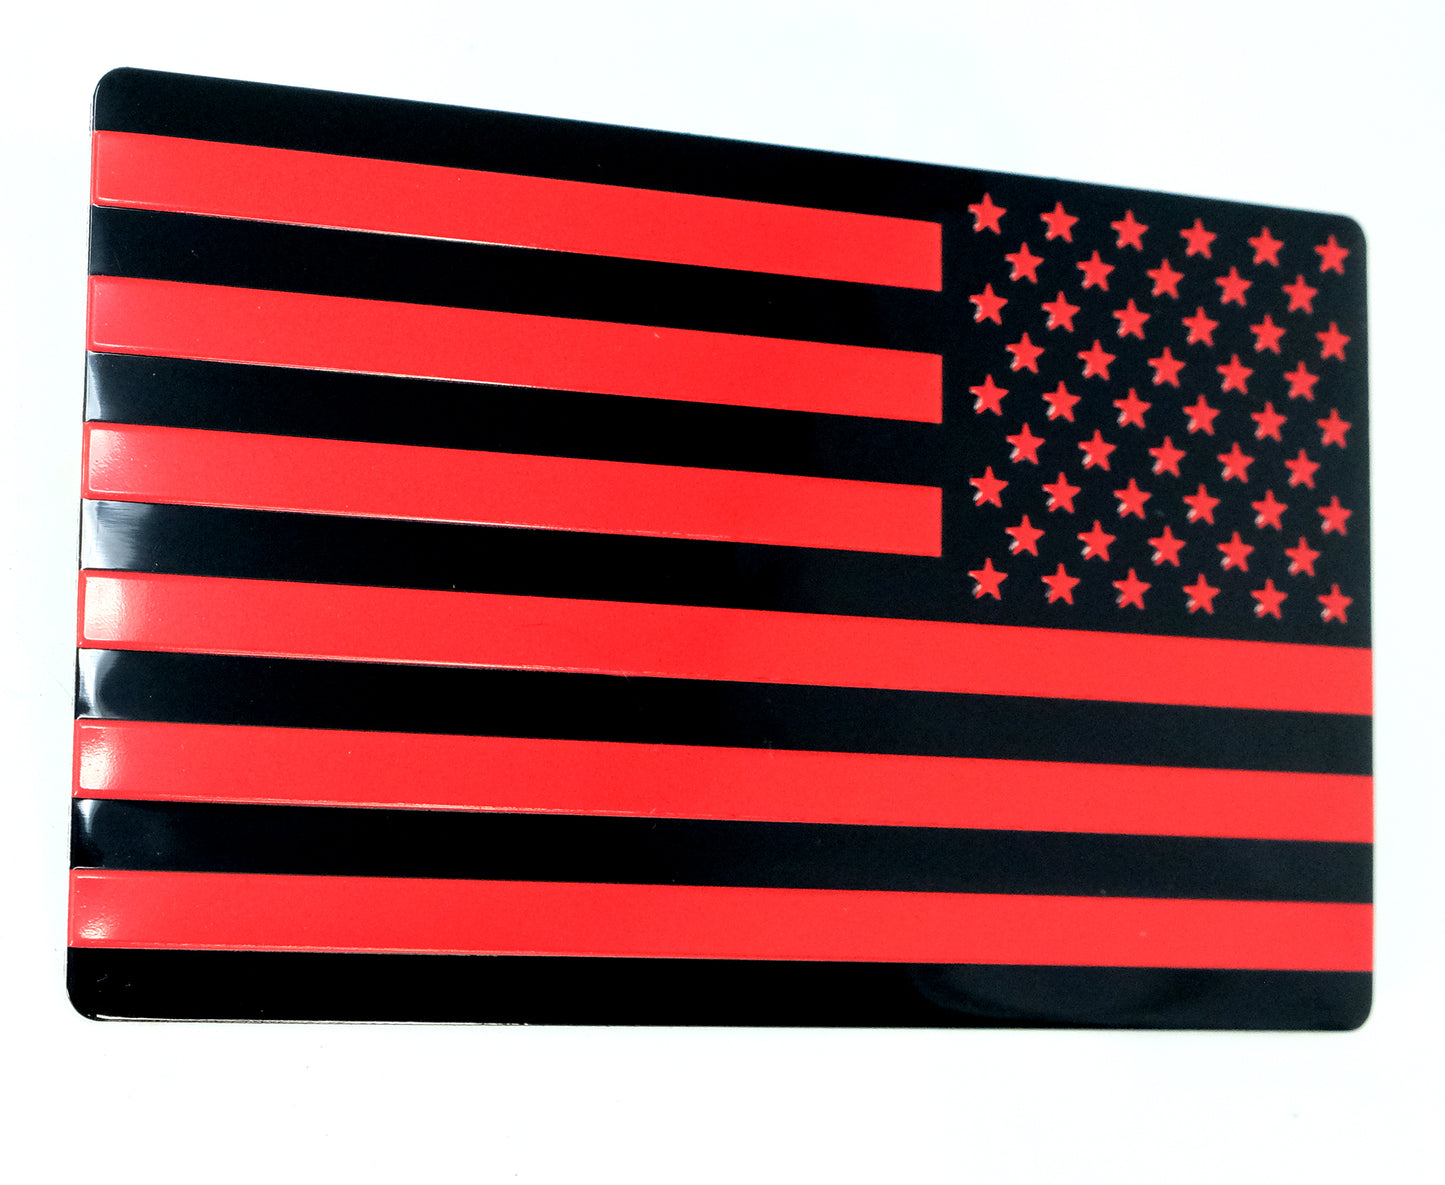 US Black Red Flag Fender Emblem for Cars, Trucks 5"x3" (Pair - Forward & Reverse)